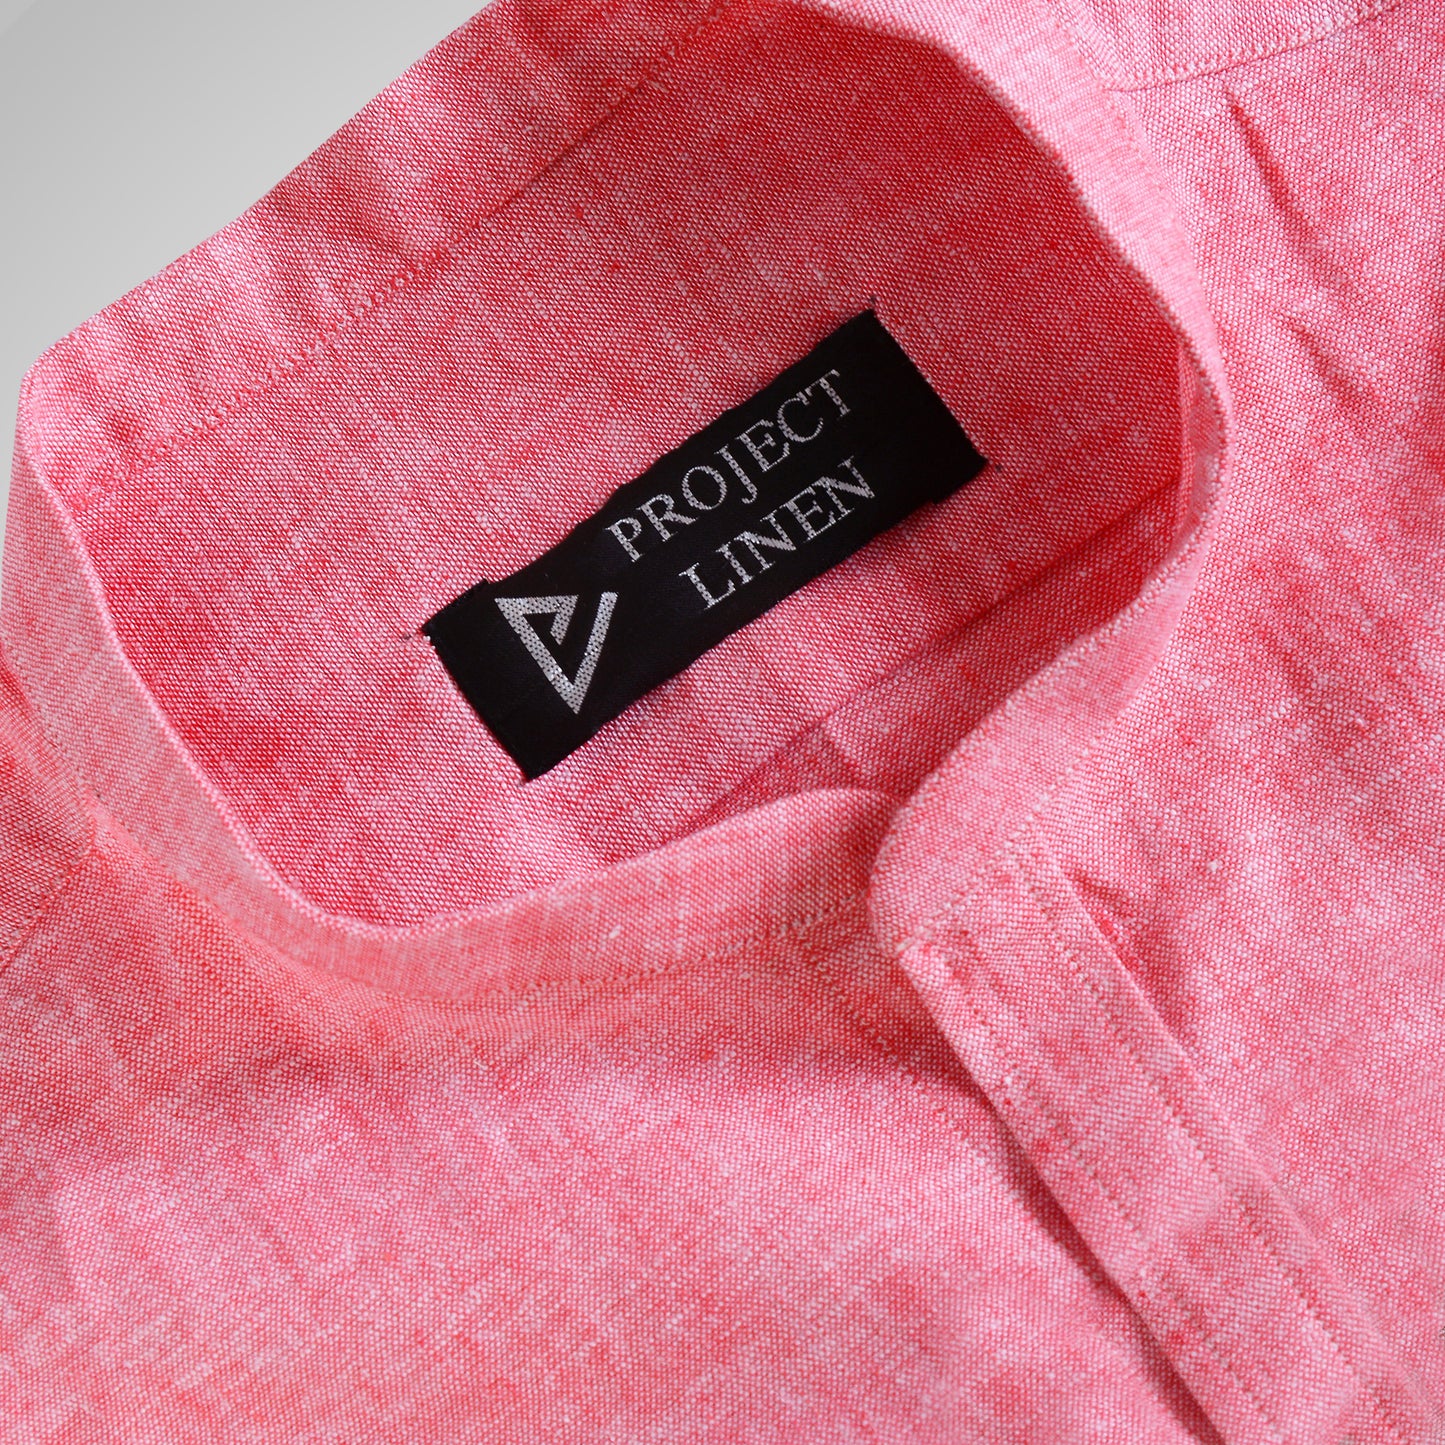 Blush Pink linen shirt - Her's